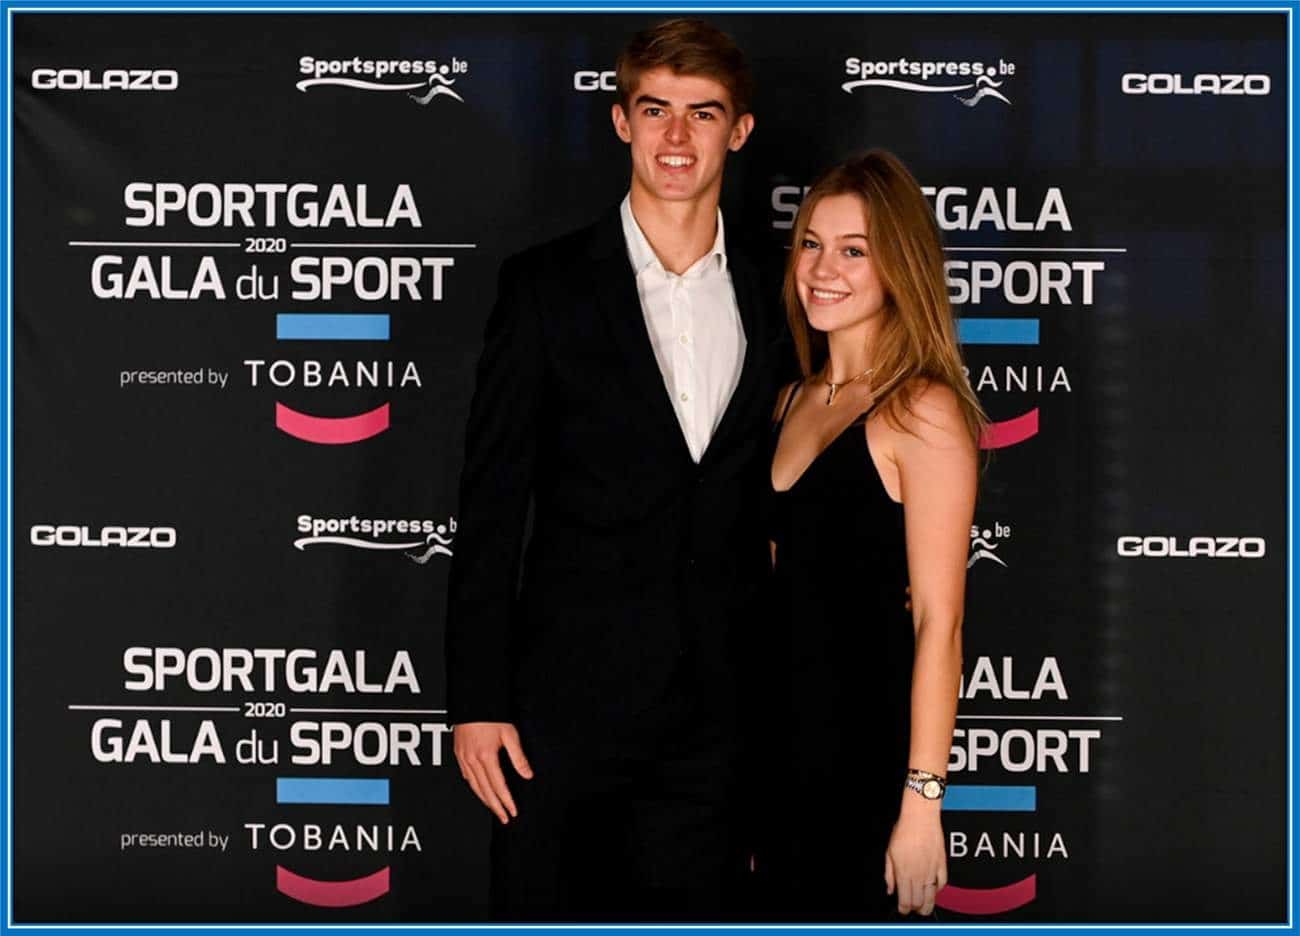 Jozefien Van de Velde and her boyfriend at a SportGala event.